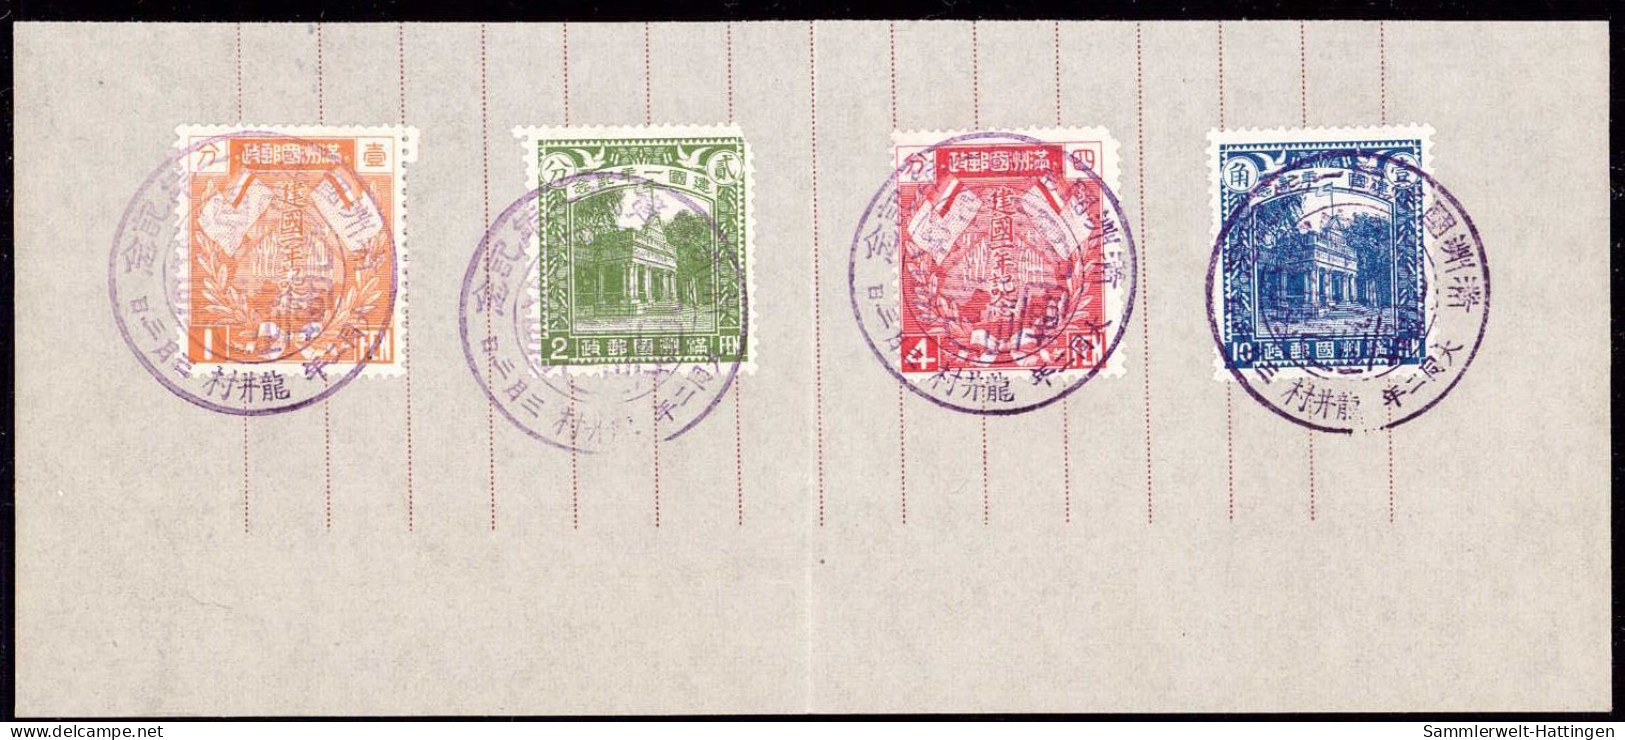 604263 | Souvenirblatt Mit Marken Und Sonderstempel Zum 1. Jahrestag Der Republik Manschukuo, 1933, China  | - 1932-45  Mandschurei (Mandschukuo)